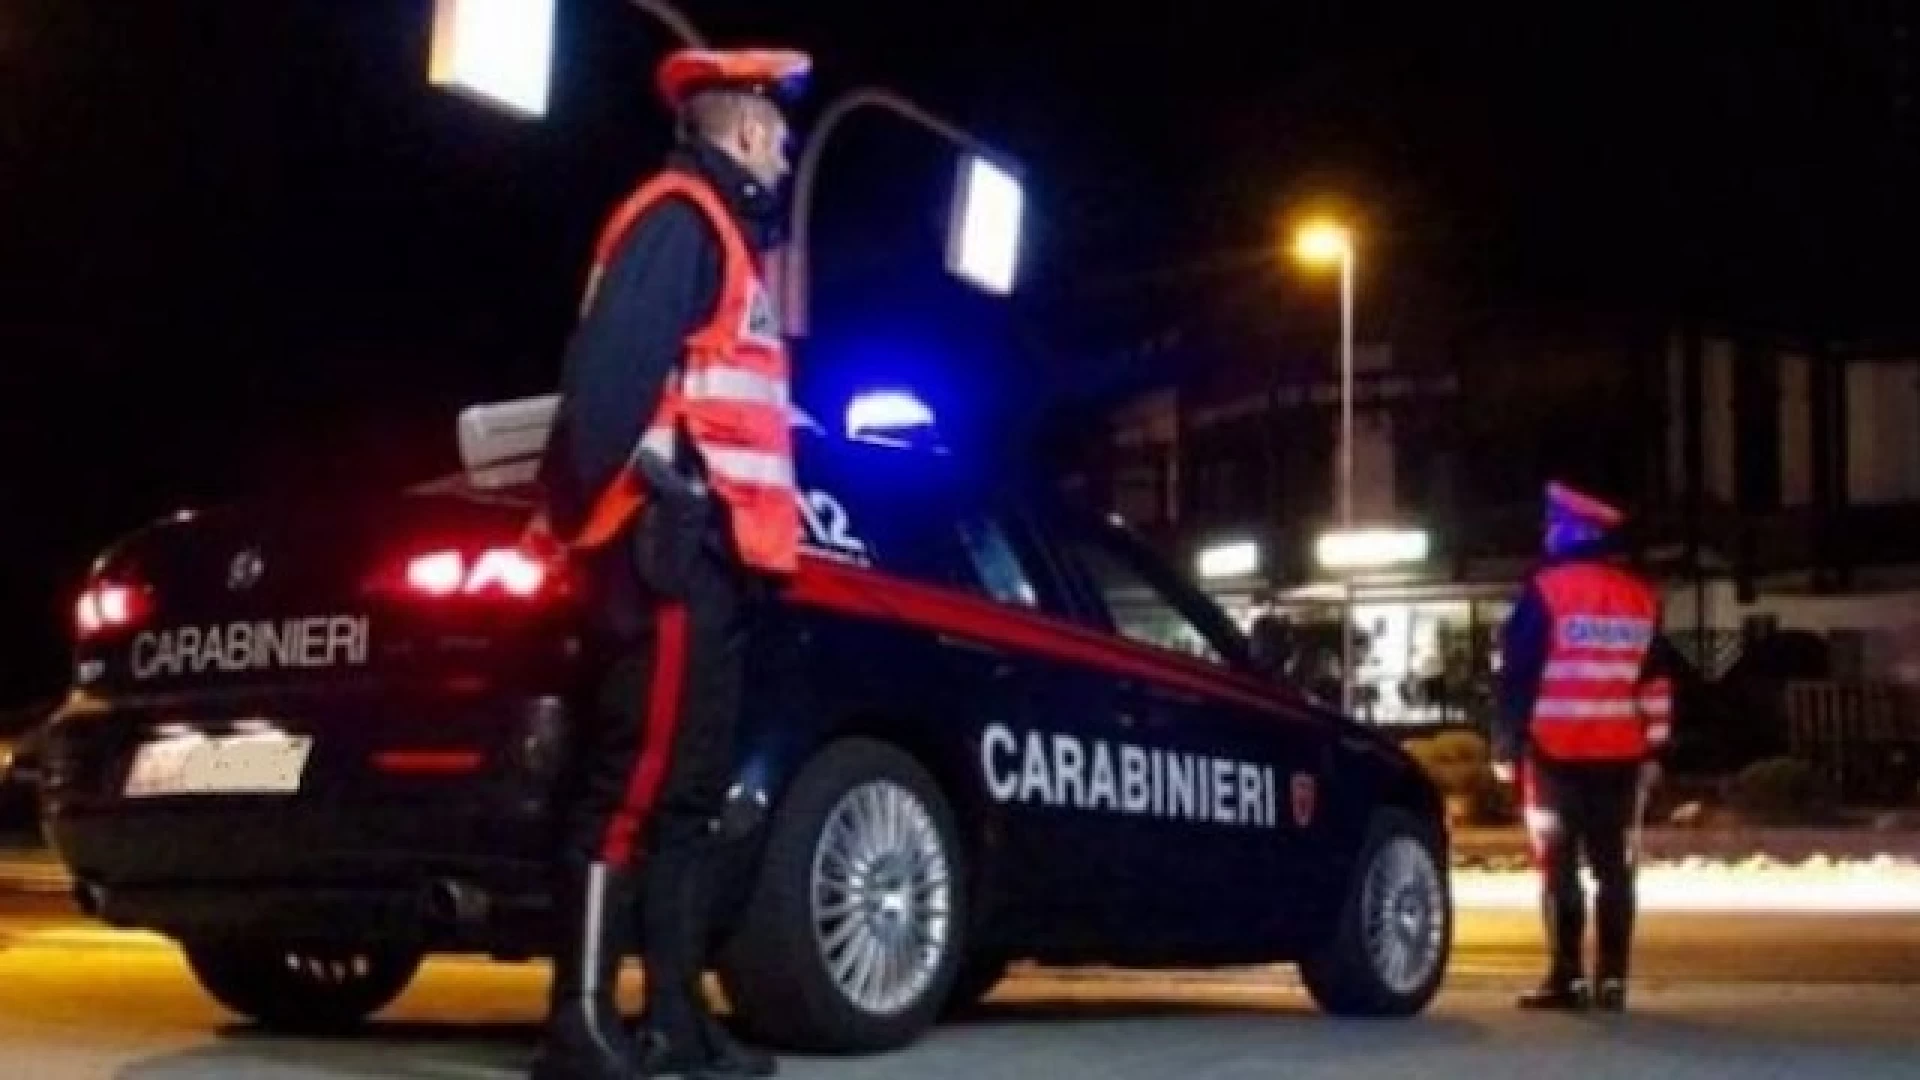 Venafro: Carabinieri segnalano alla Prefettura un giovane per possesso e uso personale di sostanze stupefacenti.